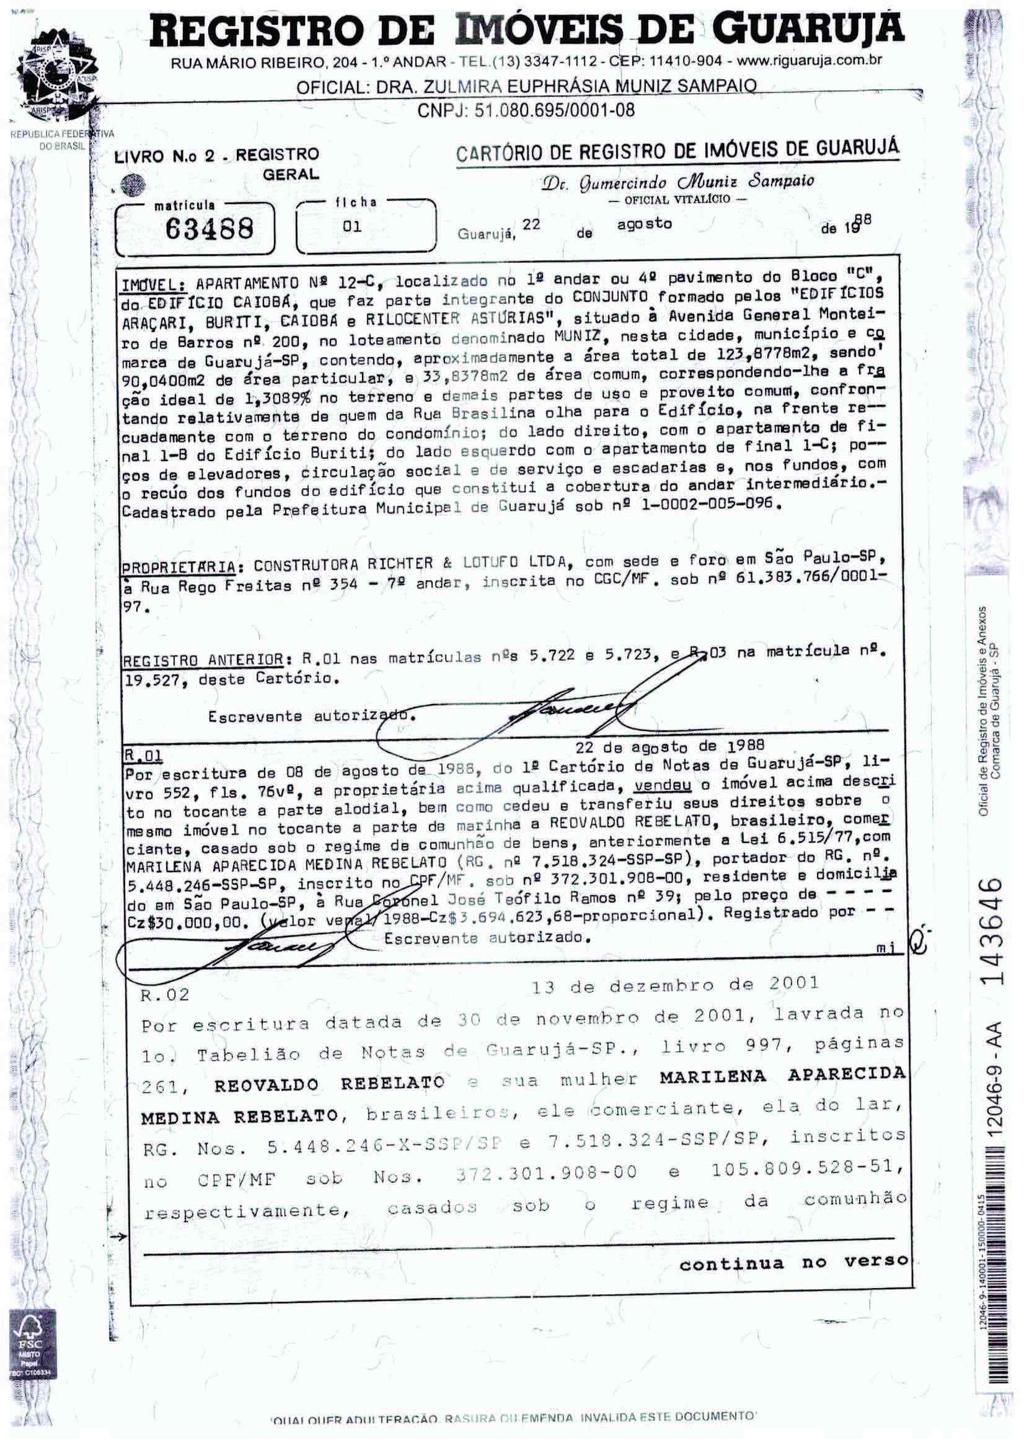 fls. 59 Este documento é cópia do original, assinado digitalmente por LUIS PAULO PERCHIAVALLI DA ROCHA FROTA BRAGA e Tribunal de Justica do Estado de Sao Paulo, protocolado em 27/03/2017 às 11:22,